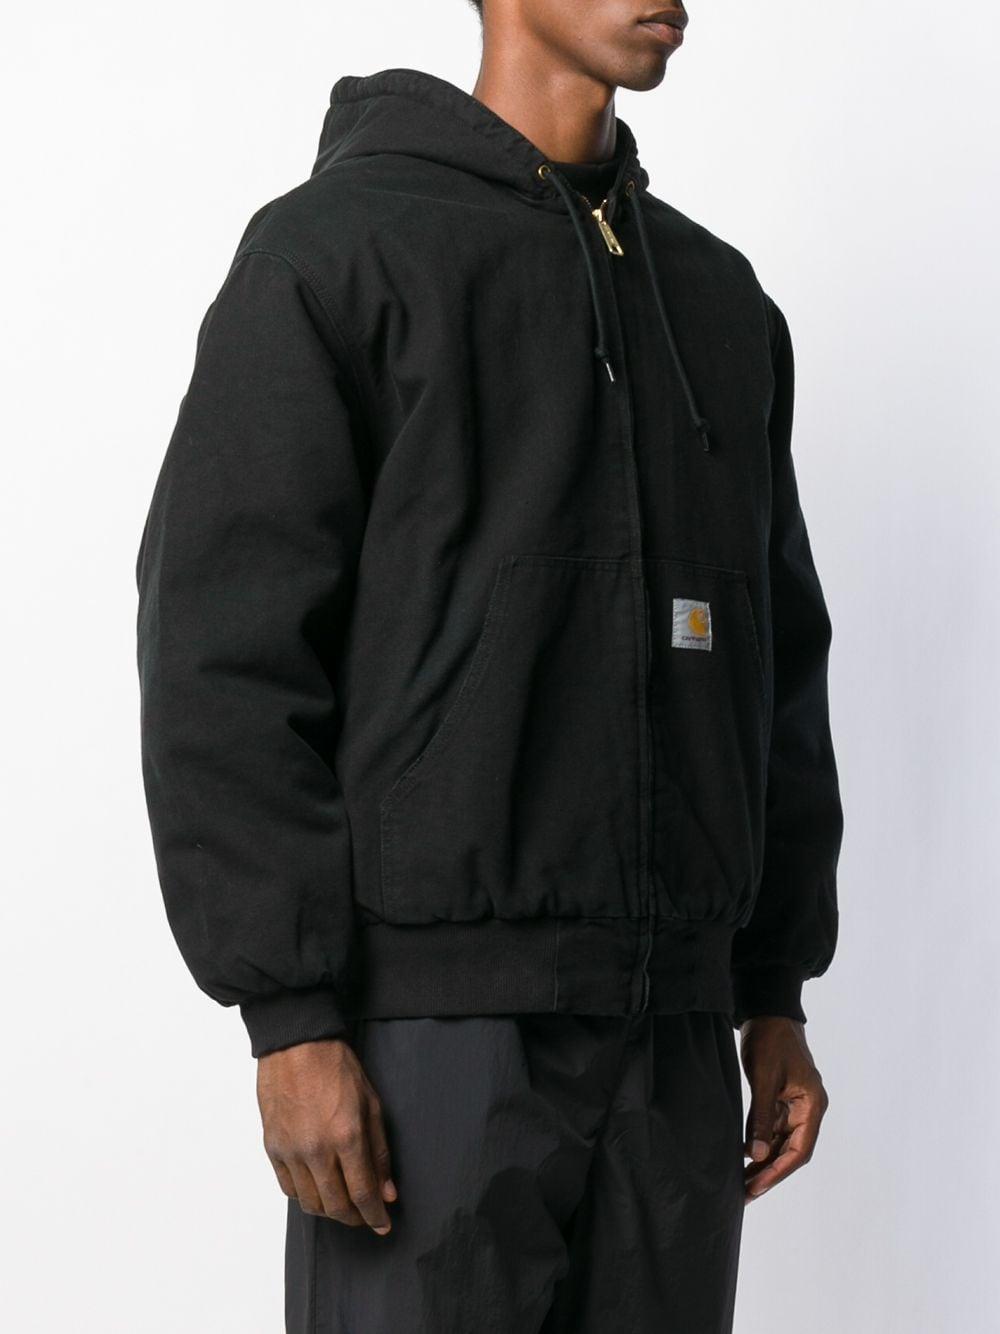 Carhartt WIP Cotton Og Active Jacket in Black for Men | Lyst